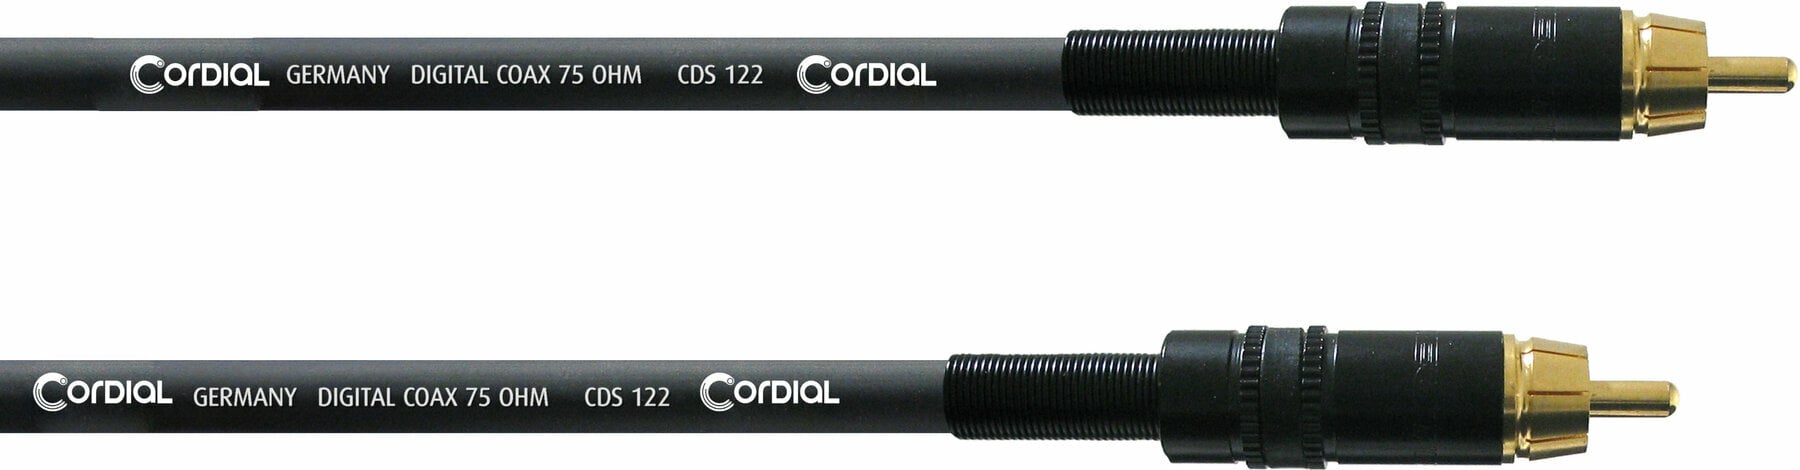 Äänikaapeli Cordial CPDS 2 CC 2 m Äänikaapeli